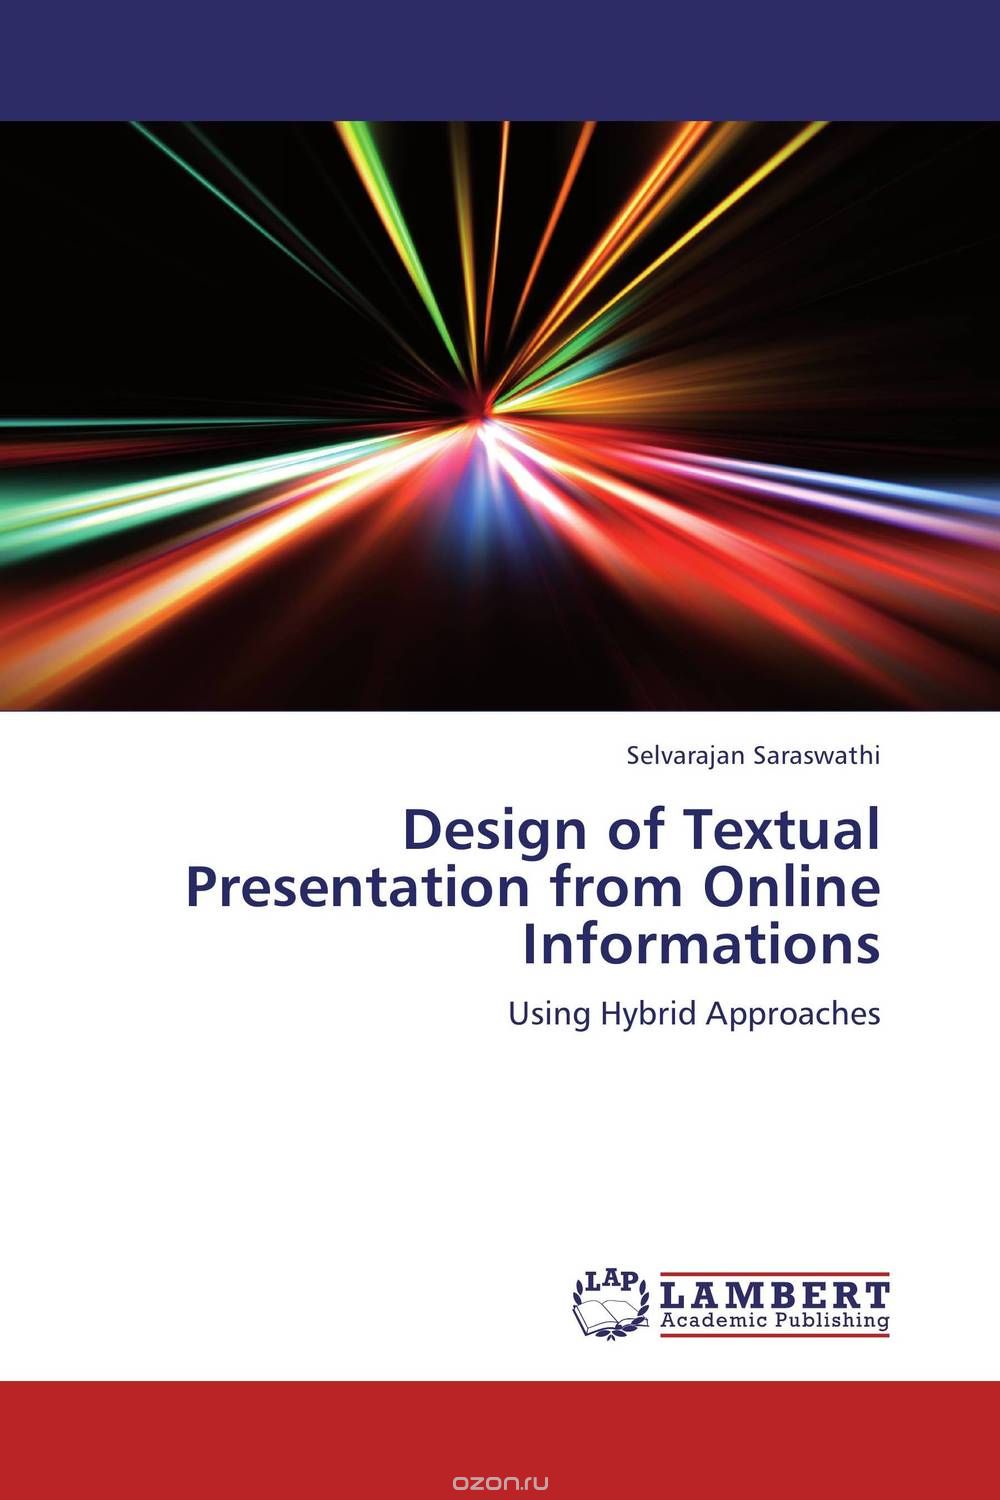 Скачать книгу "Design of Textual Presentation from Online Informations"